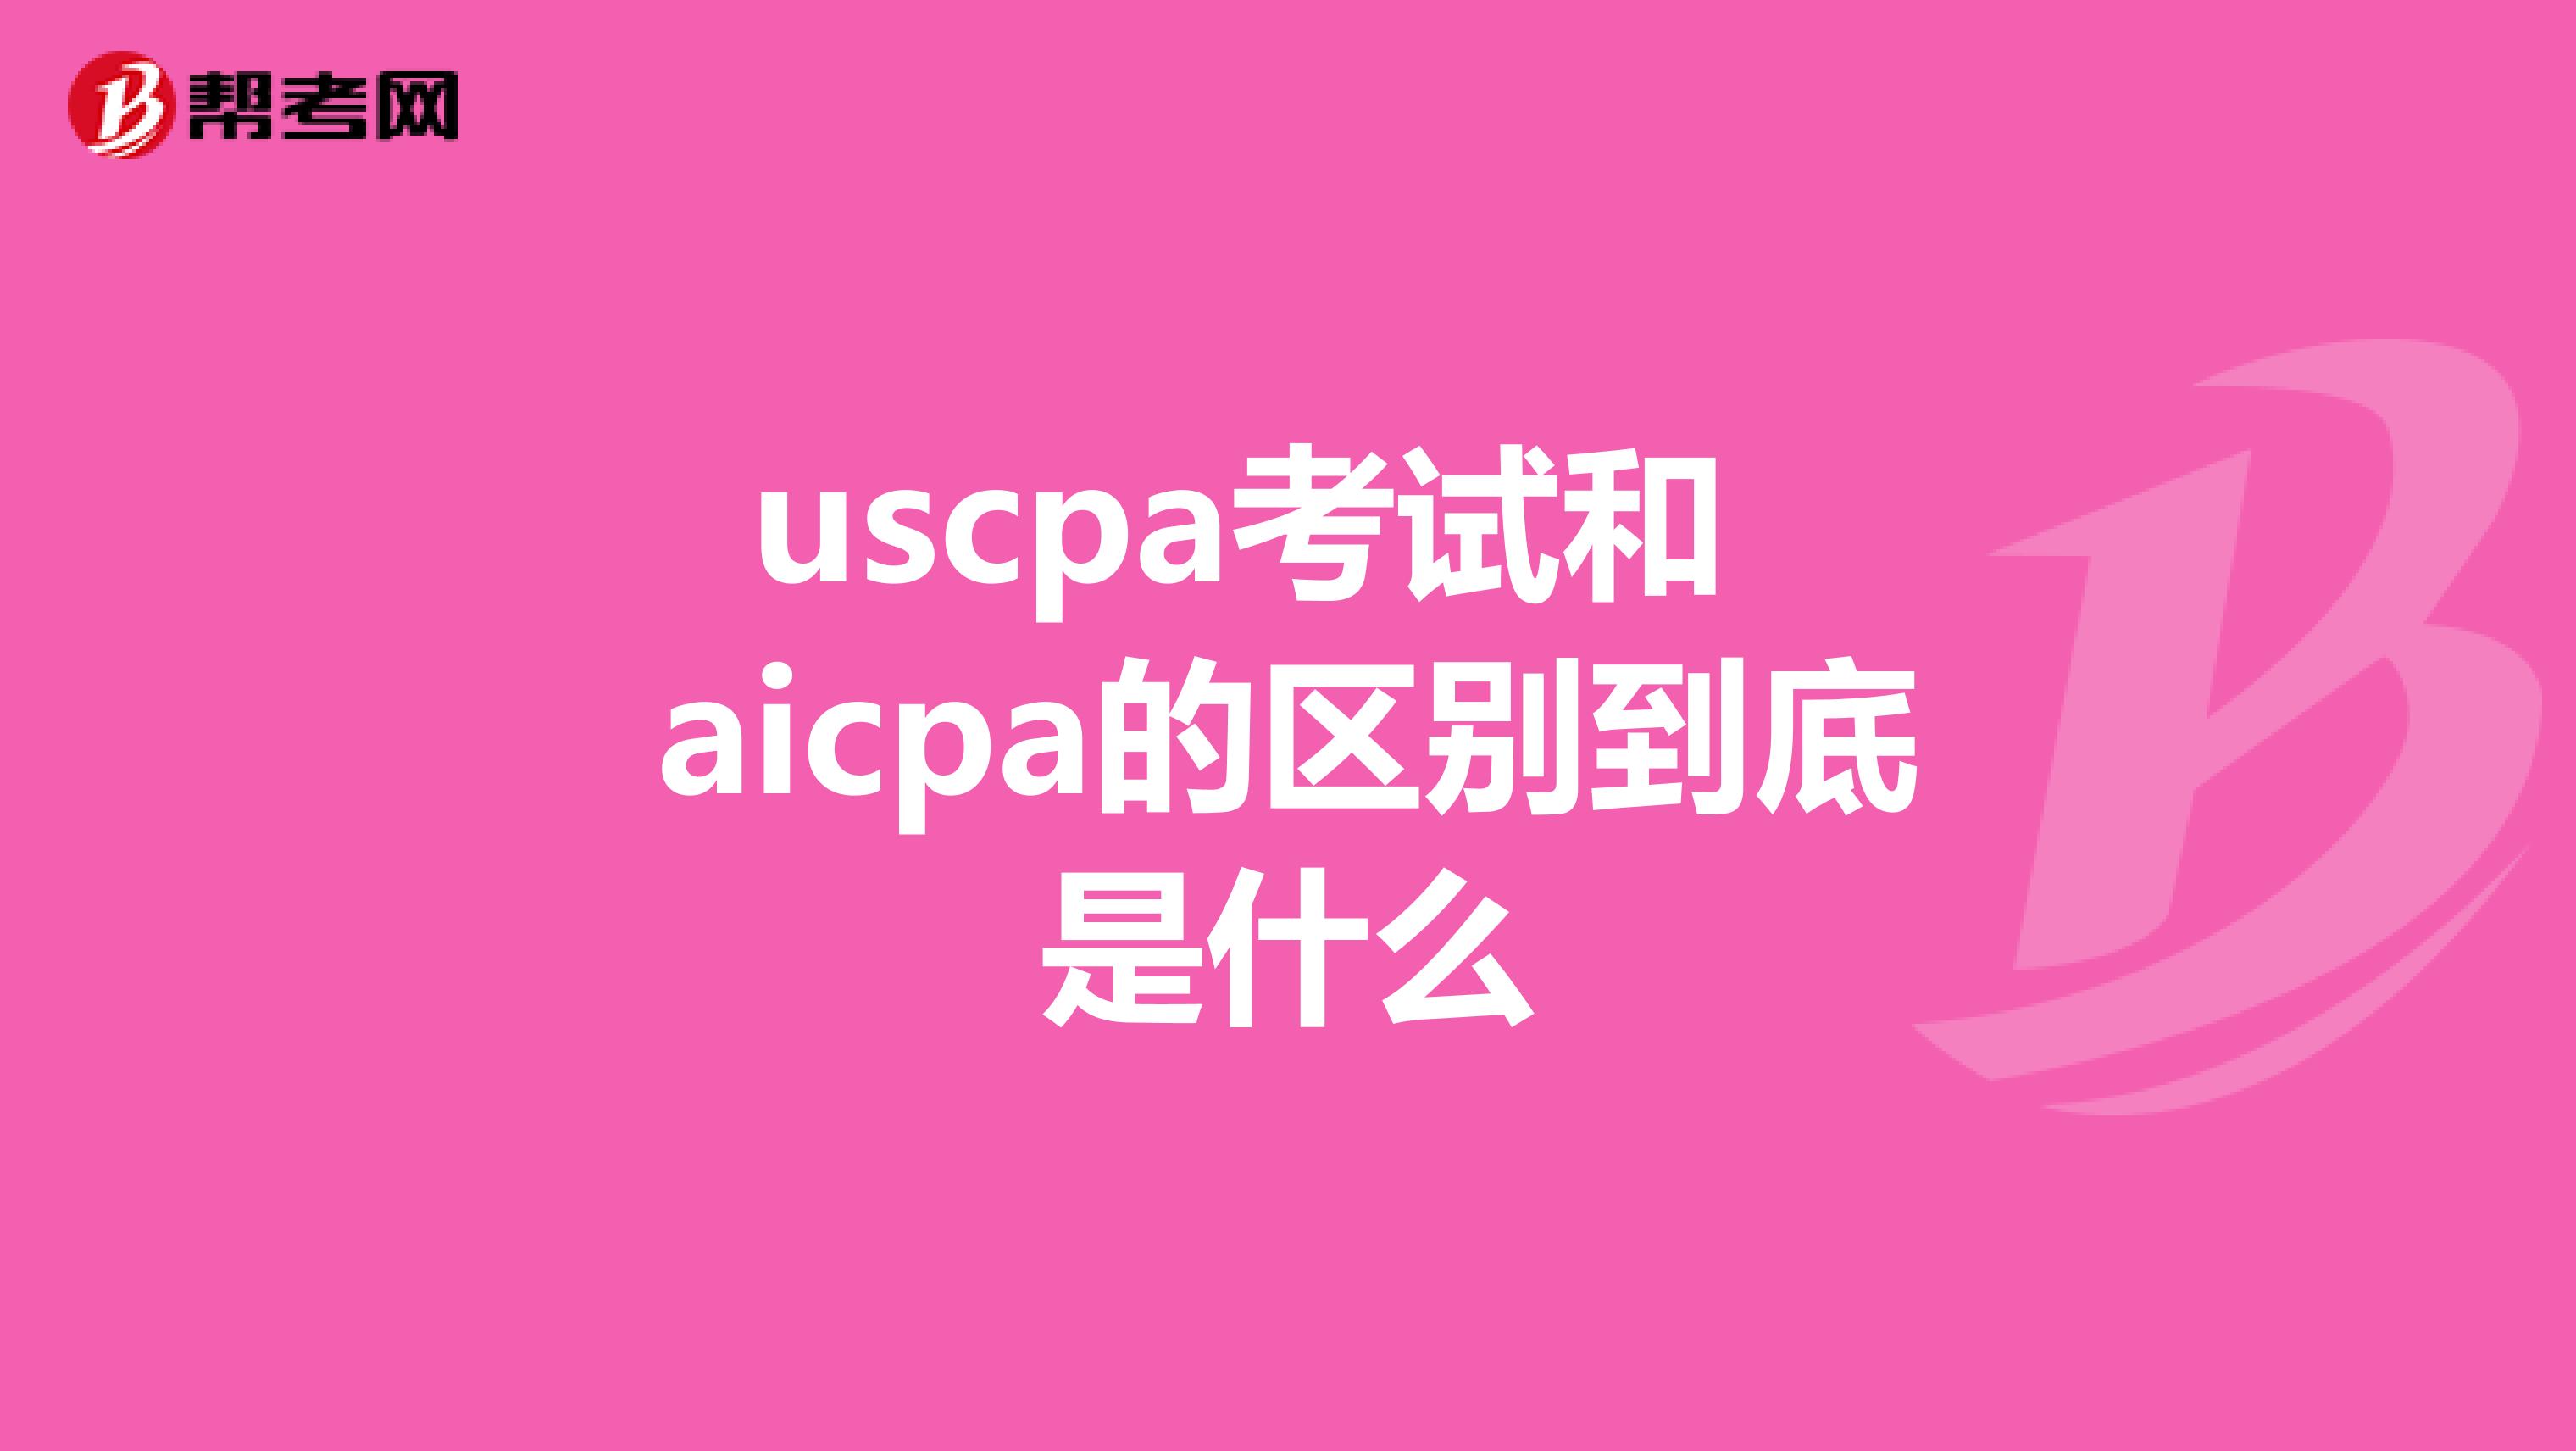 uscpa考试和aicpa的区别到底是什么